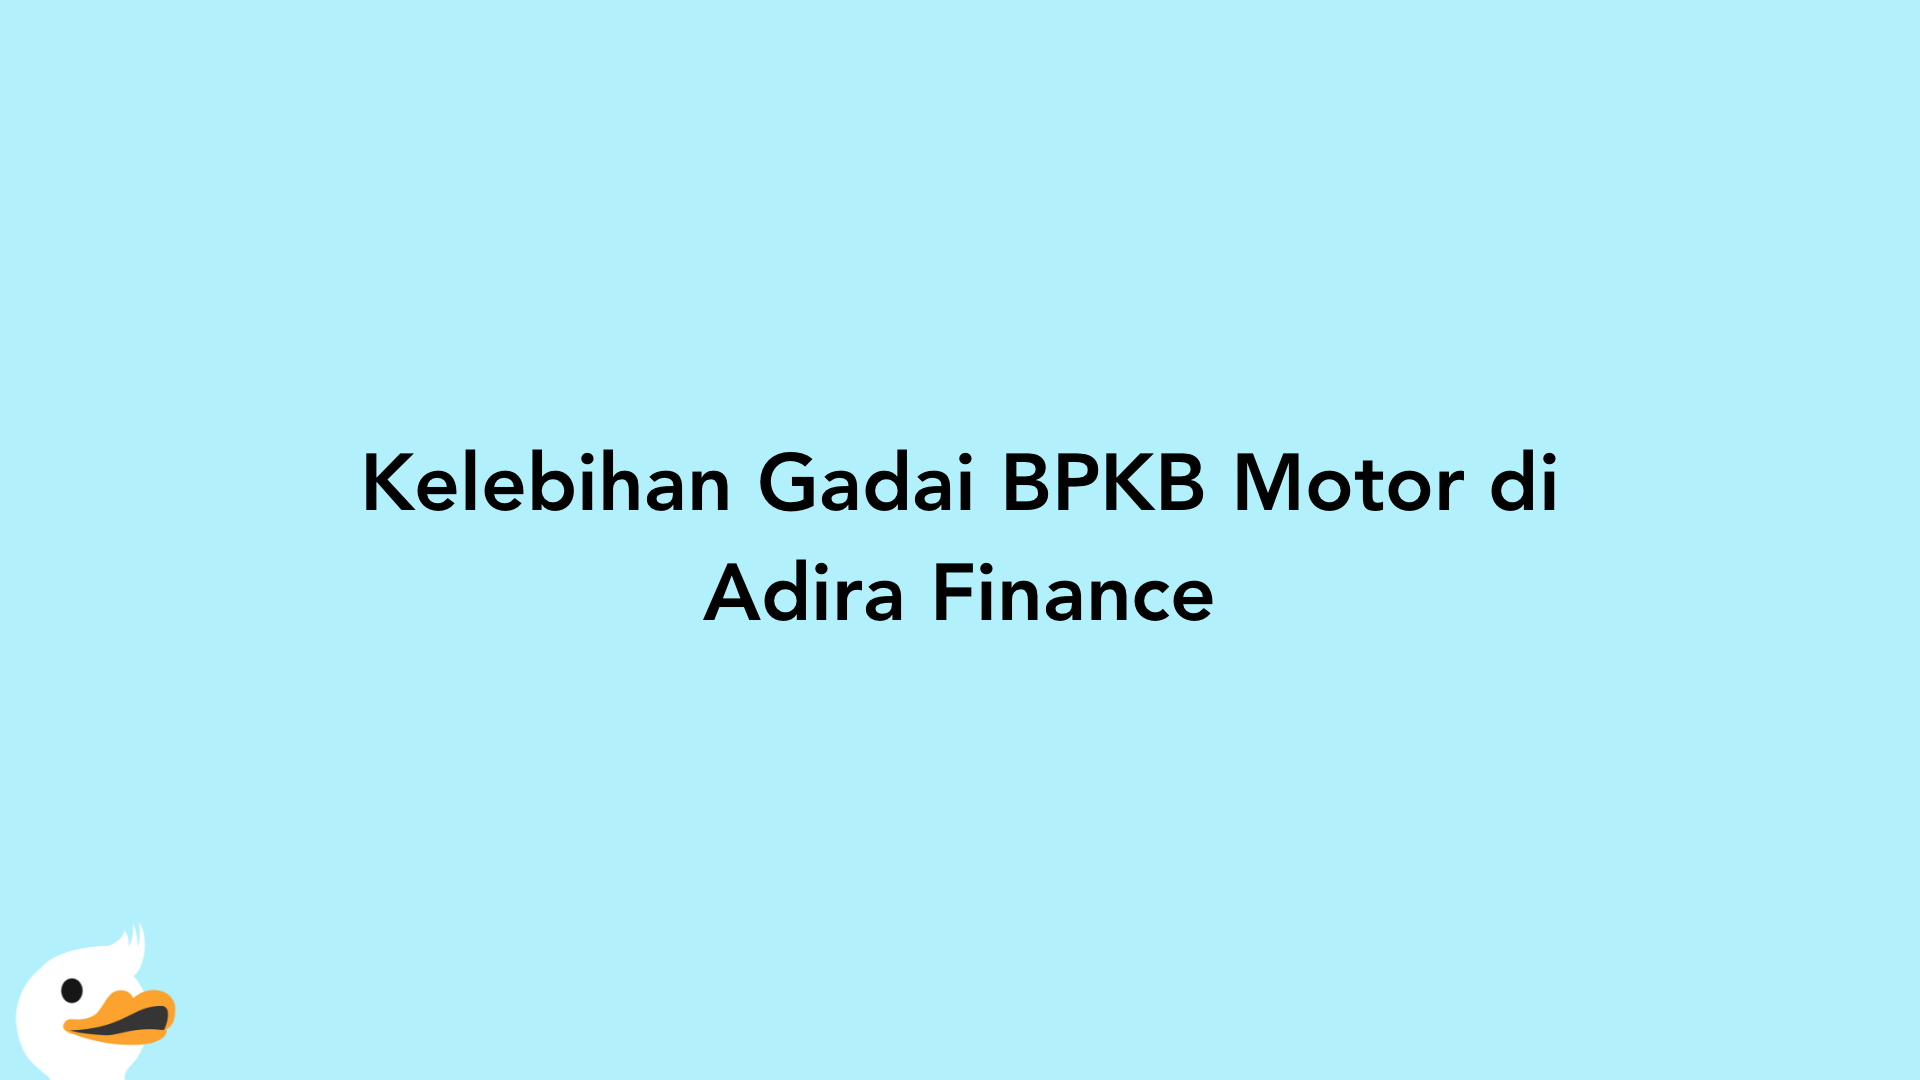 Kelebihan Gadai BPKB Motor di Adira Finance